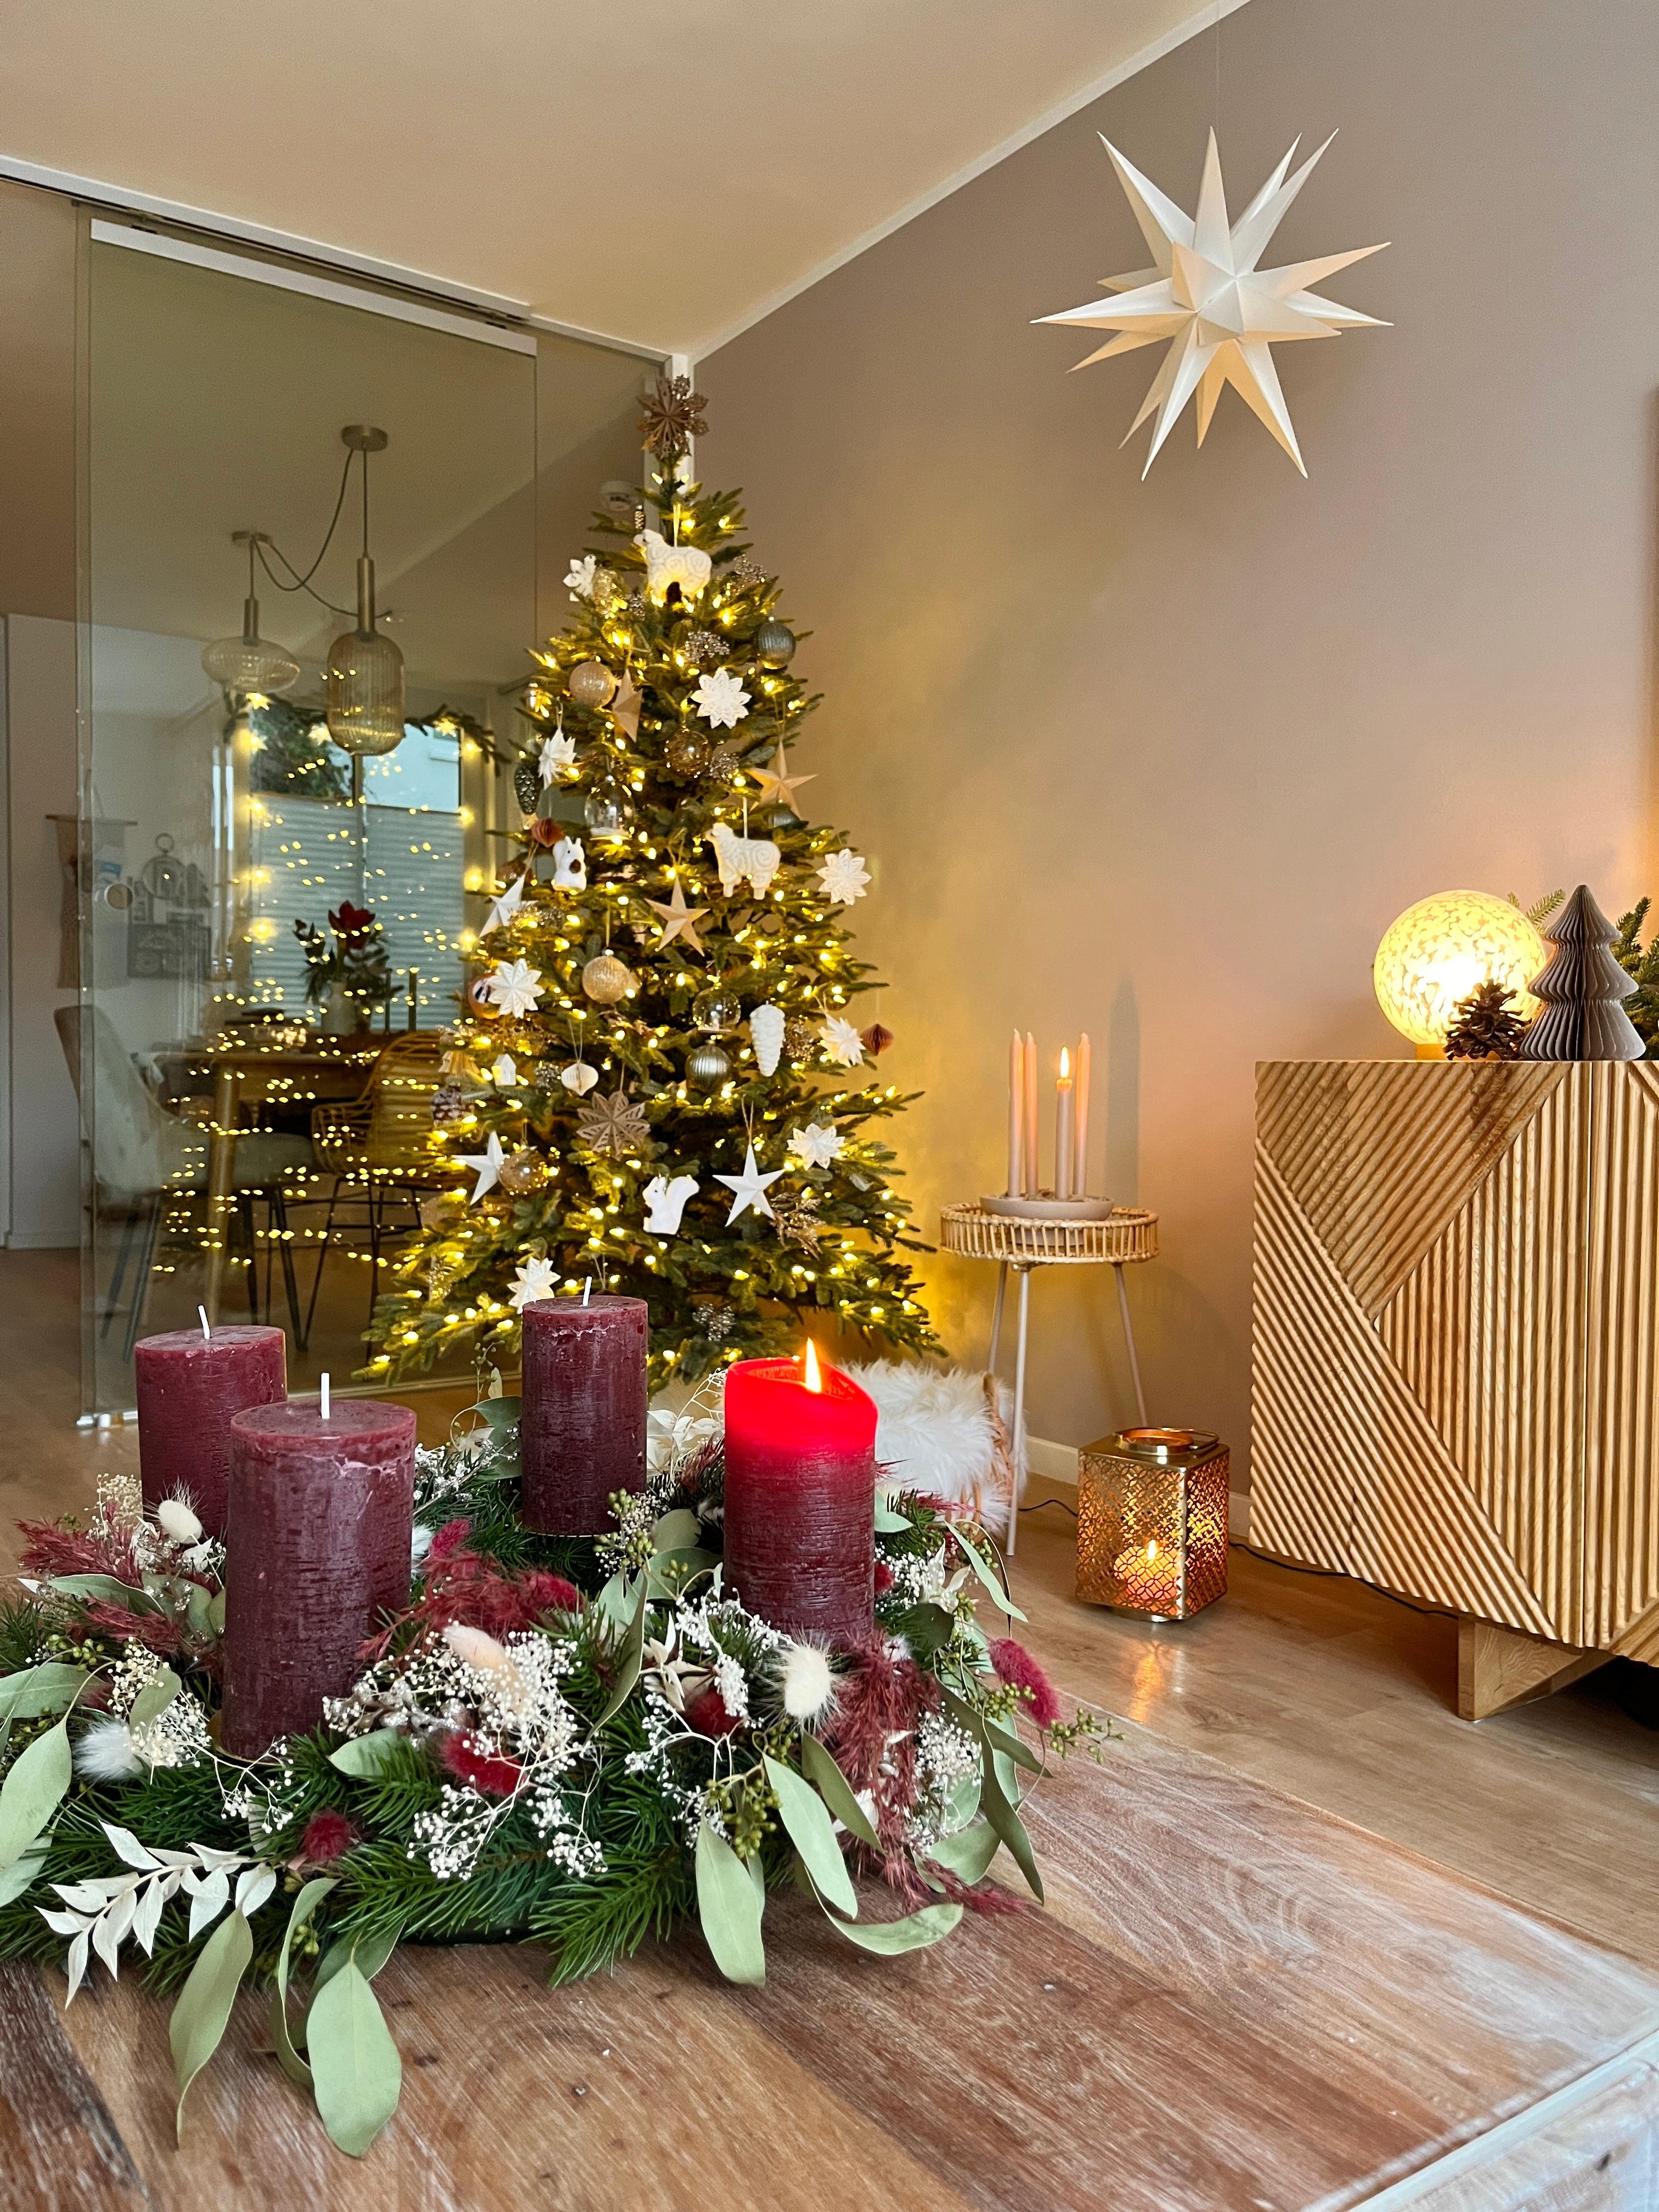 Weihnachtliche Aussichten 🎄❤️✨
#weihnachtsbaum #adventskranz #stern #weihnachtsdeko